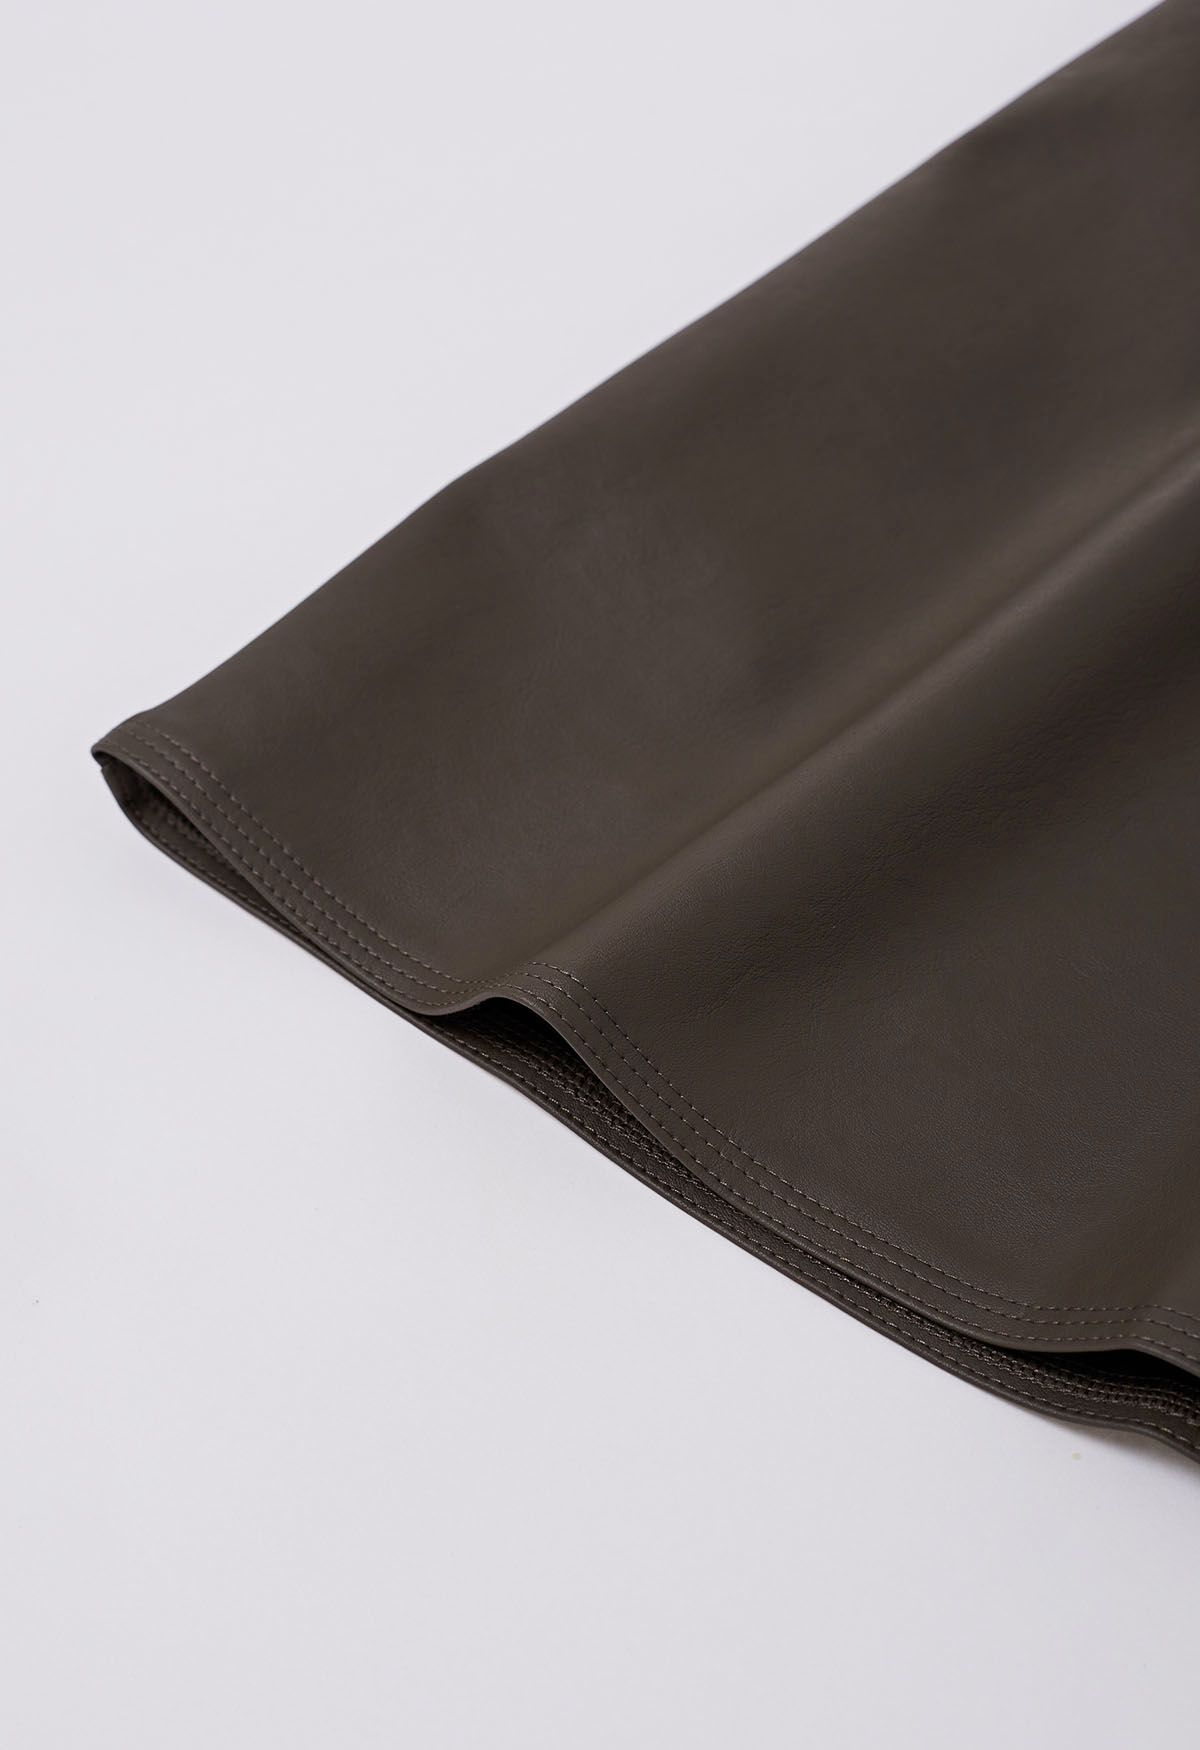 Minifalda de piel sintética con botones en marrón